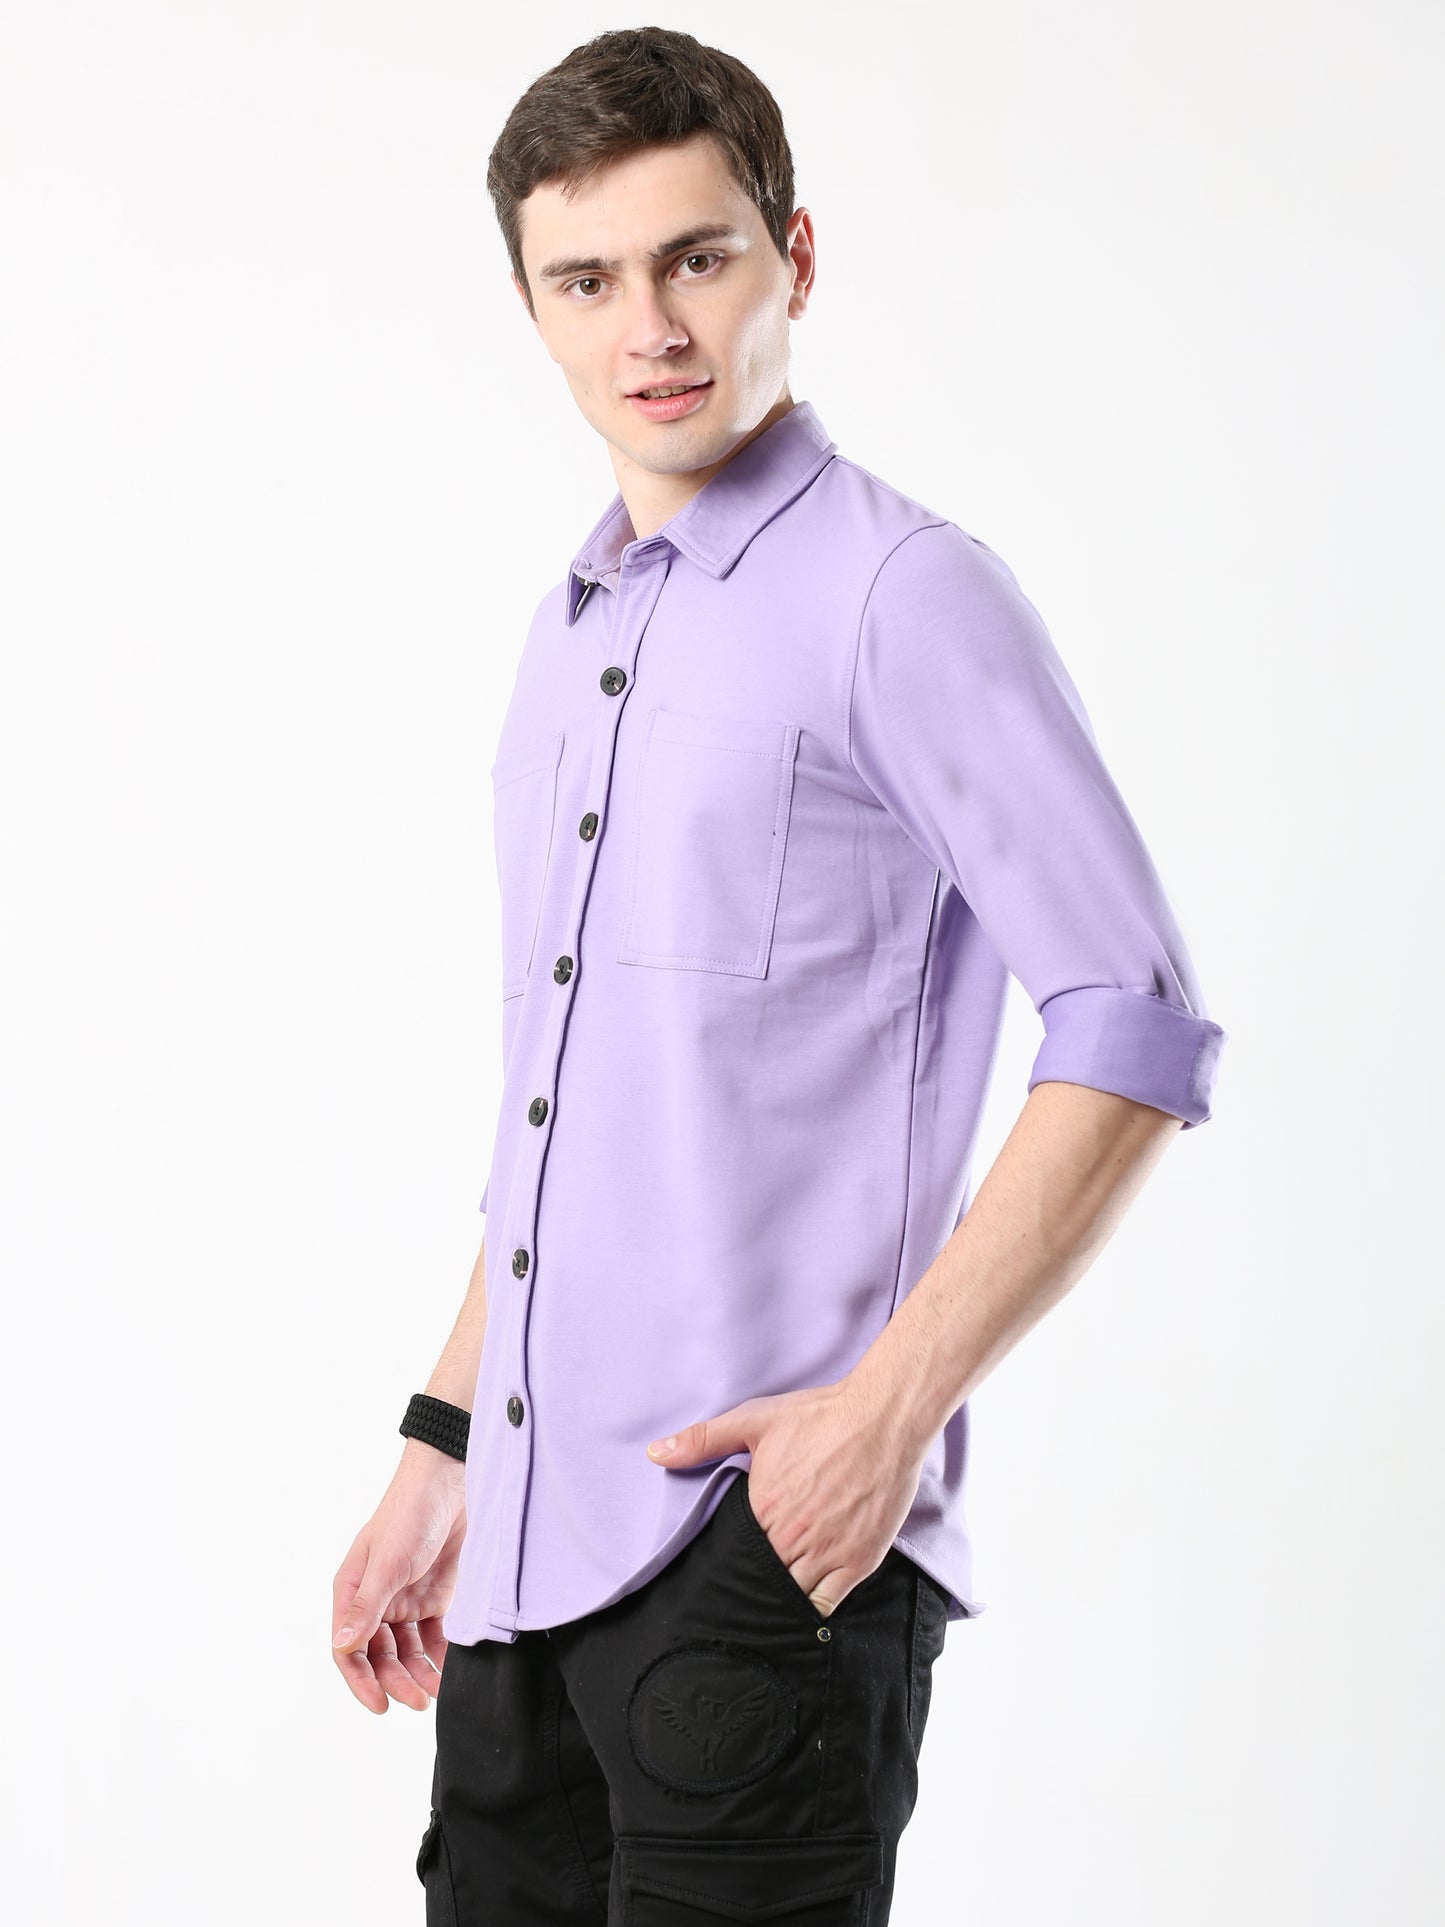 Purple Double Pocket Royal Knit overshirt - UNISEX